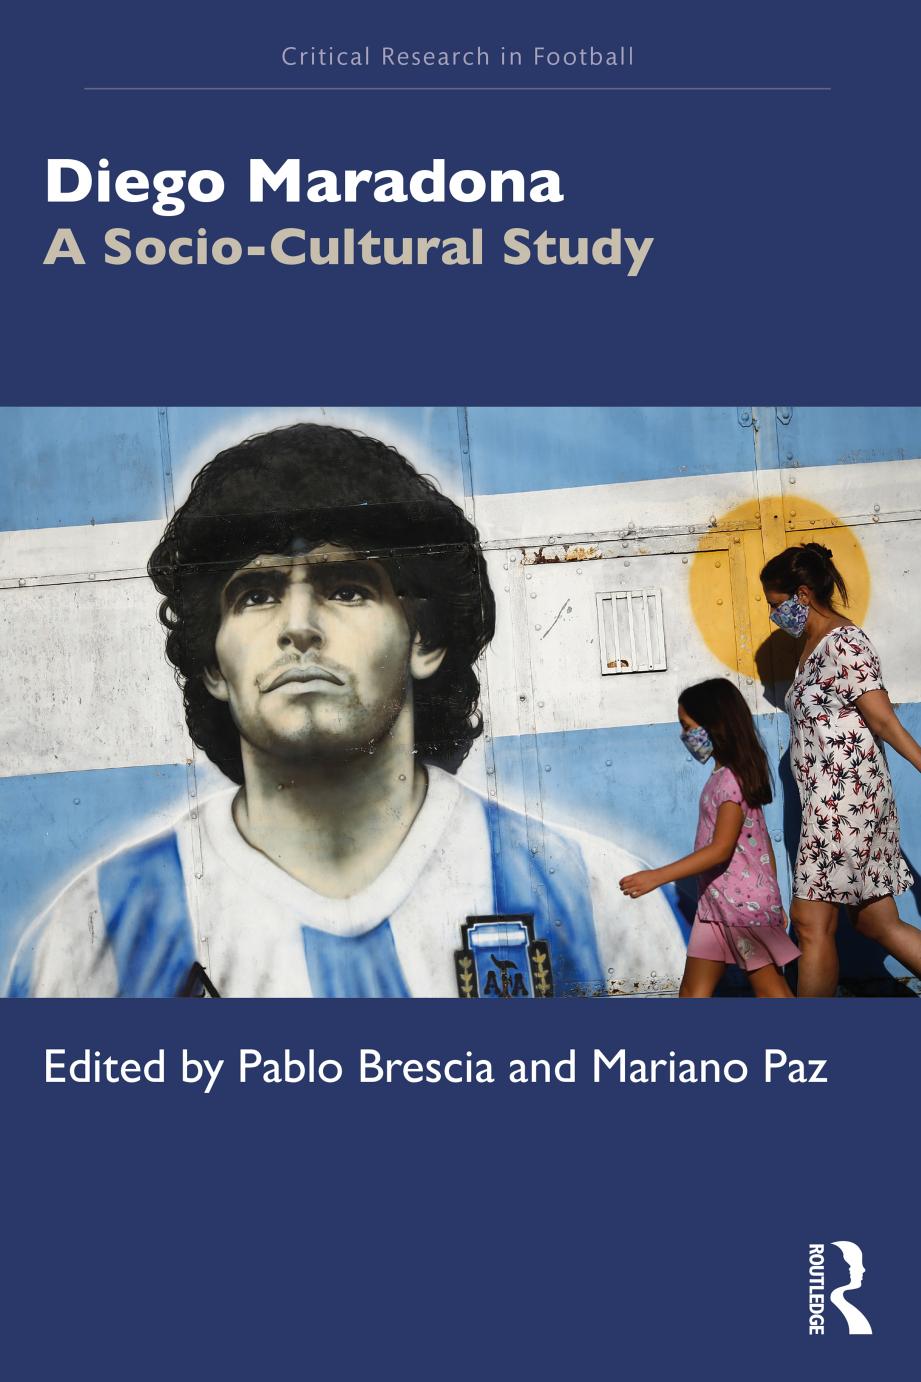 Diego Maradona: A Socio-Cultural Study by Pablo Brescia Mariano Paz